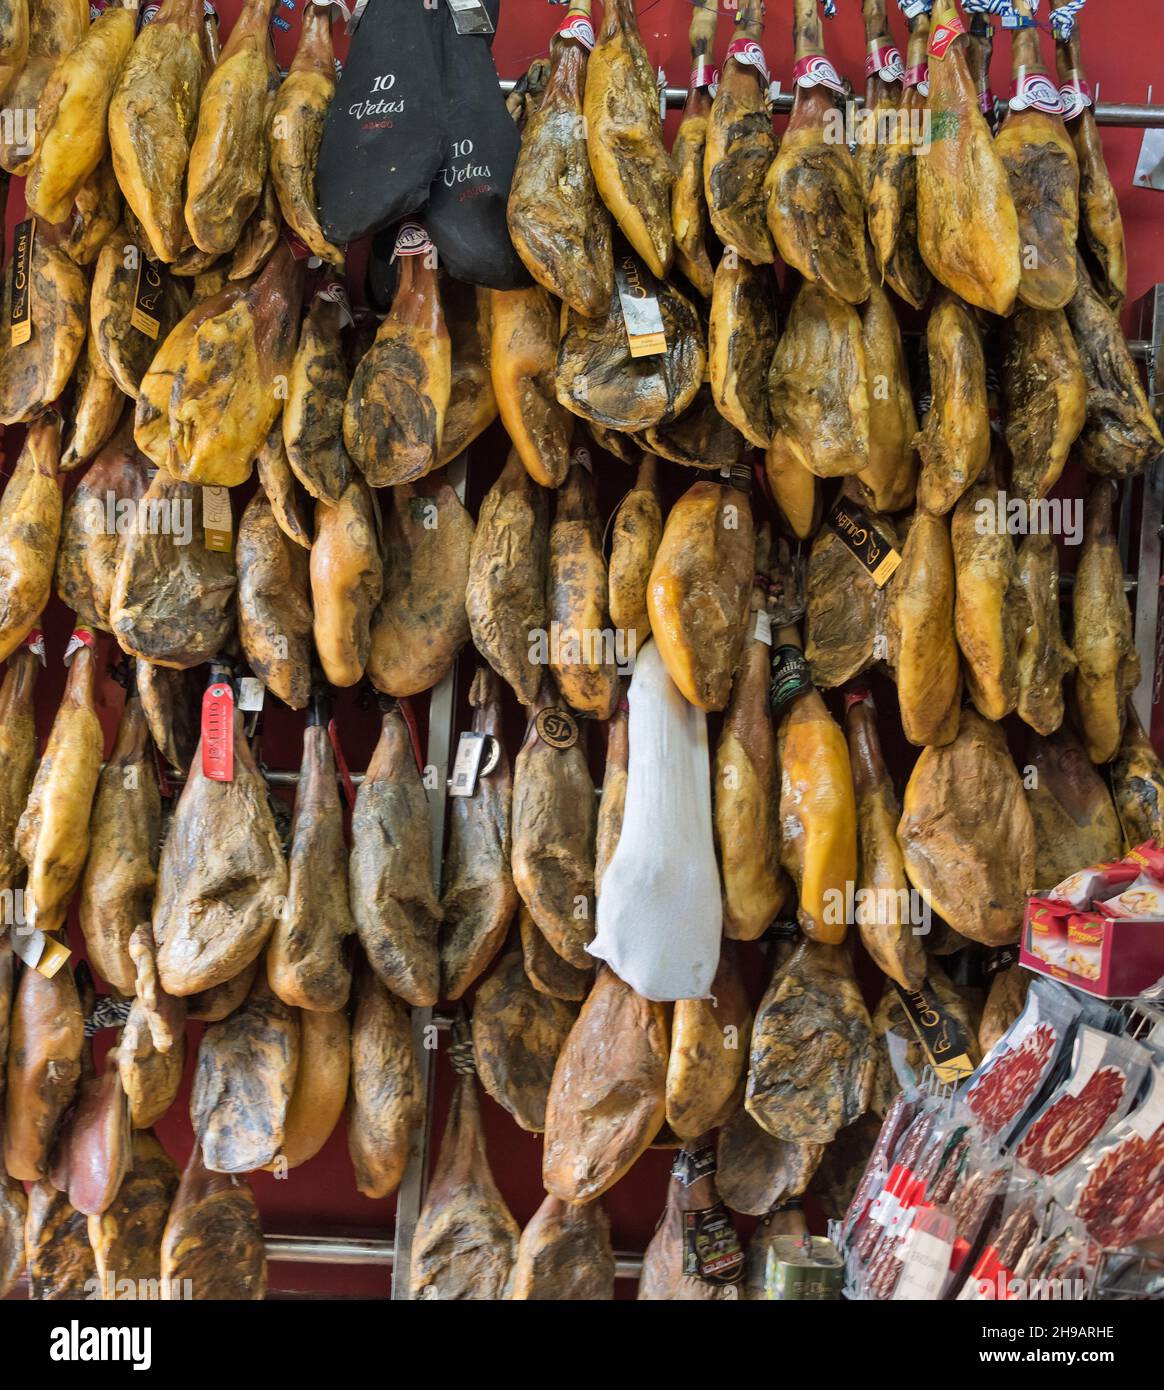 Vendita di prosciutti presso il negozio, Ronda, Provincia di Malaga, Comunità autonoma Andalusia, Spagna Foto Stock